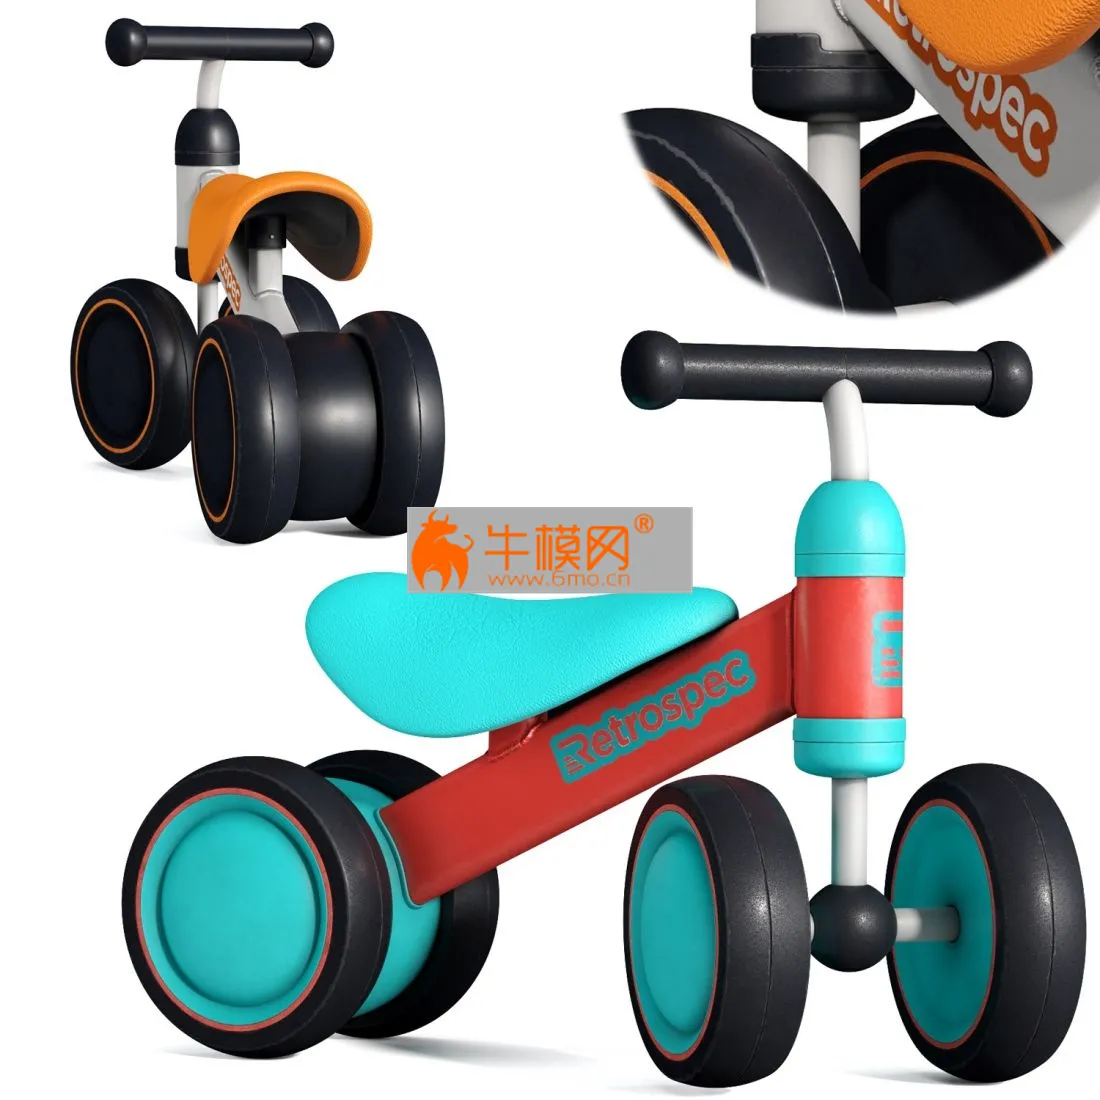 Retrospec Cricket Baby walker bike – 2650